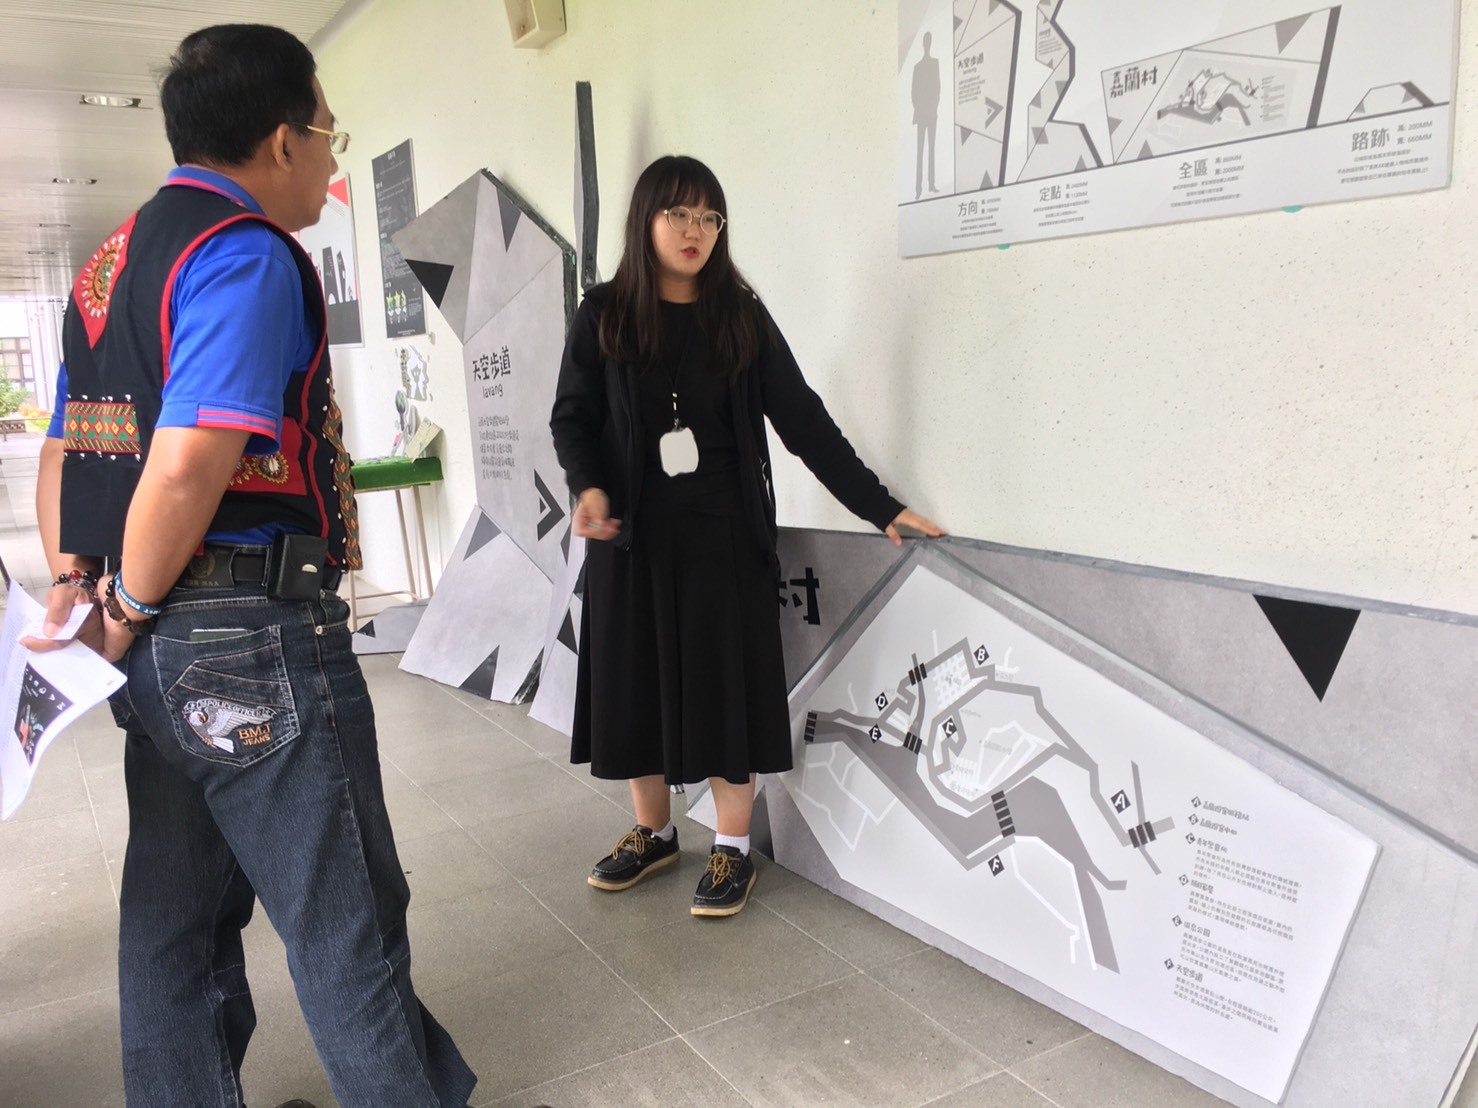 數媒系學生結合排灣、魯凱族文化特色，為嘉蘭部落各景點設計環境視覺指標。